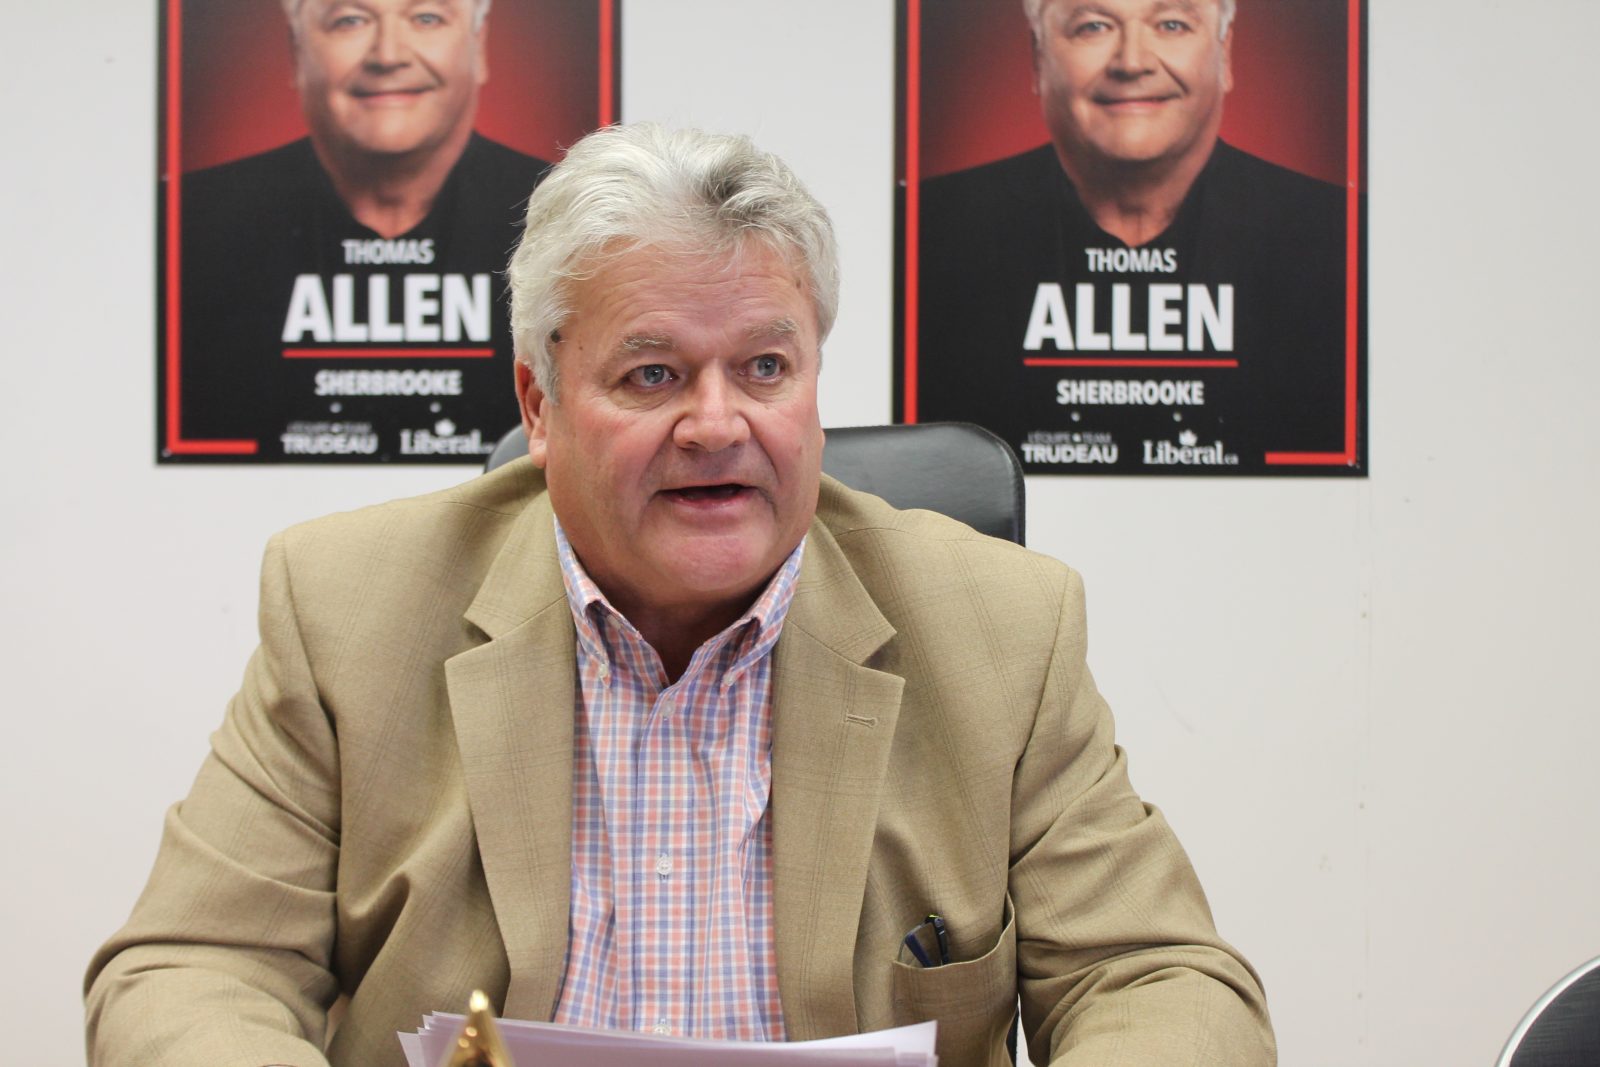 Allen proud of a positive campaign